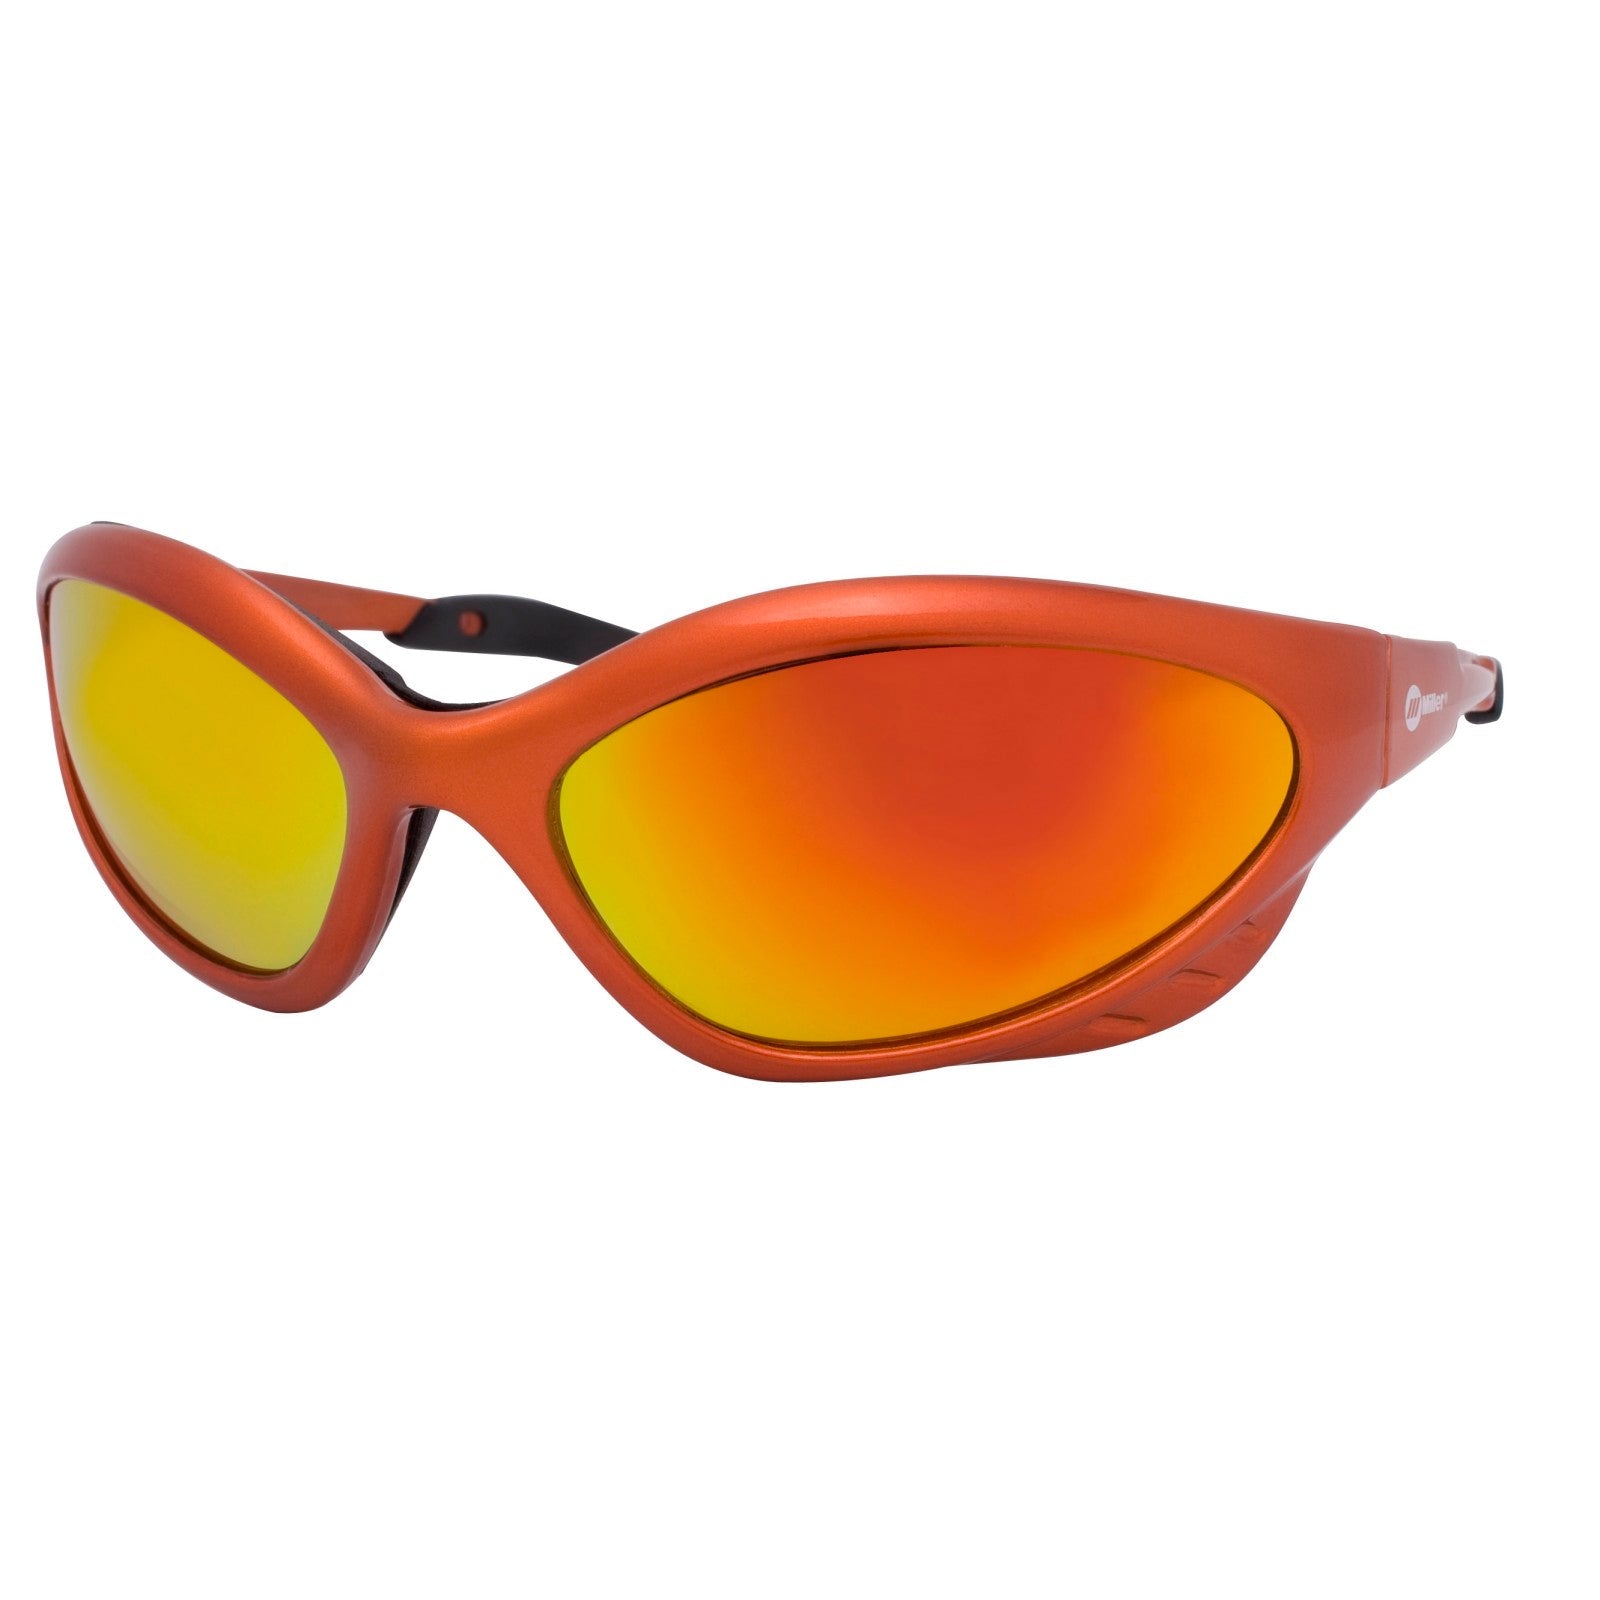 Miller Shade 5 Orange Frame Safety Glasses (235659)